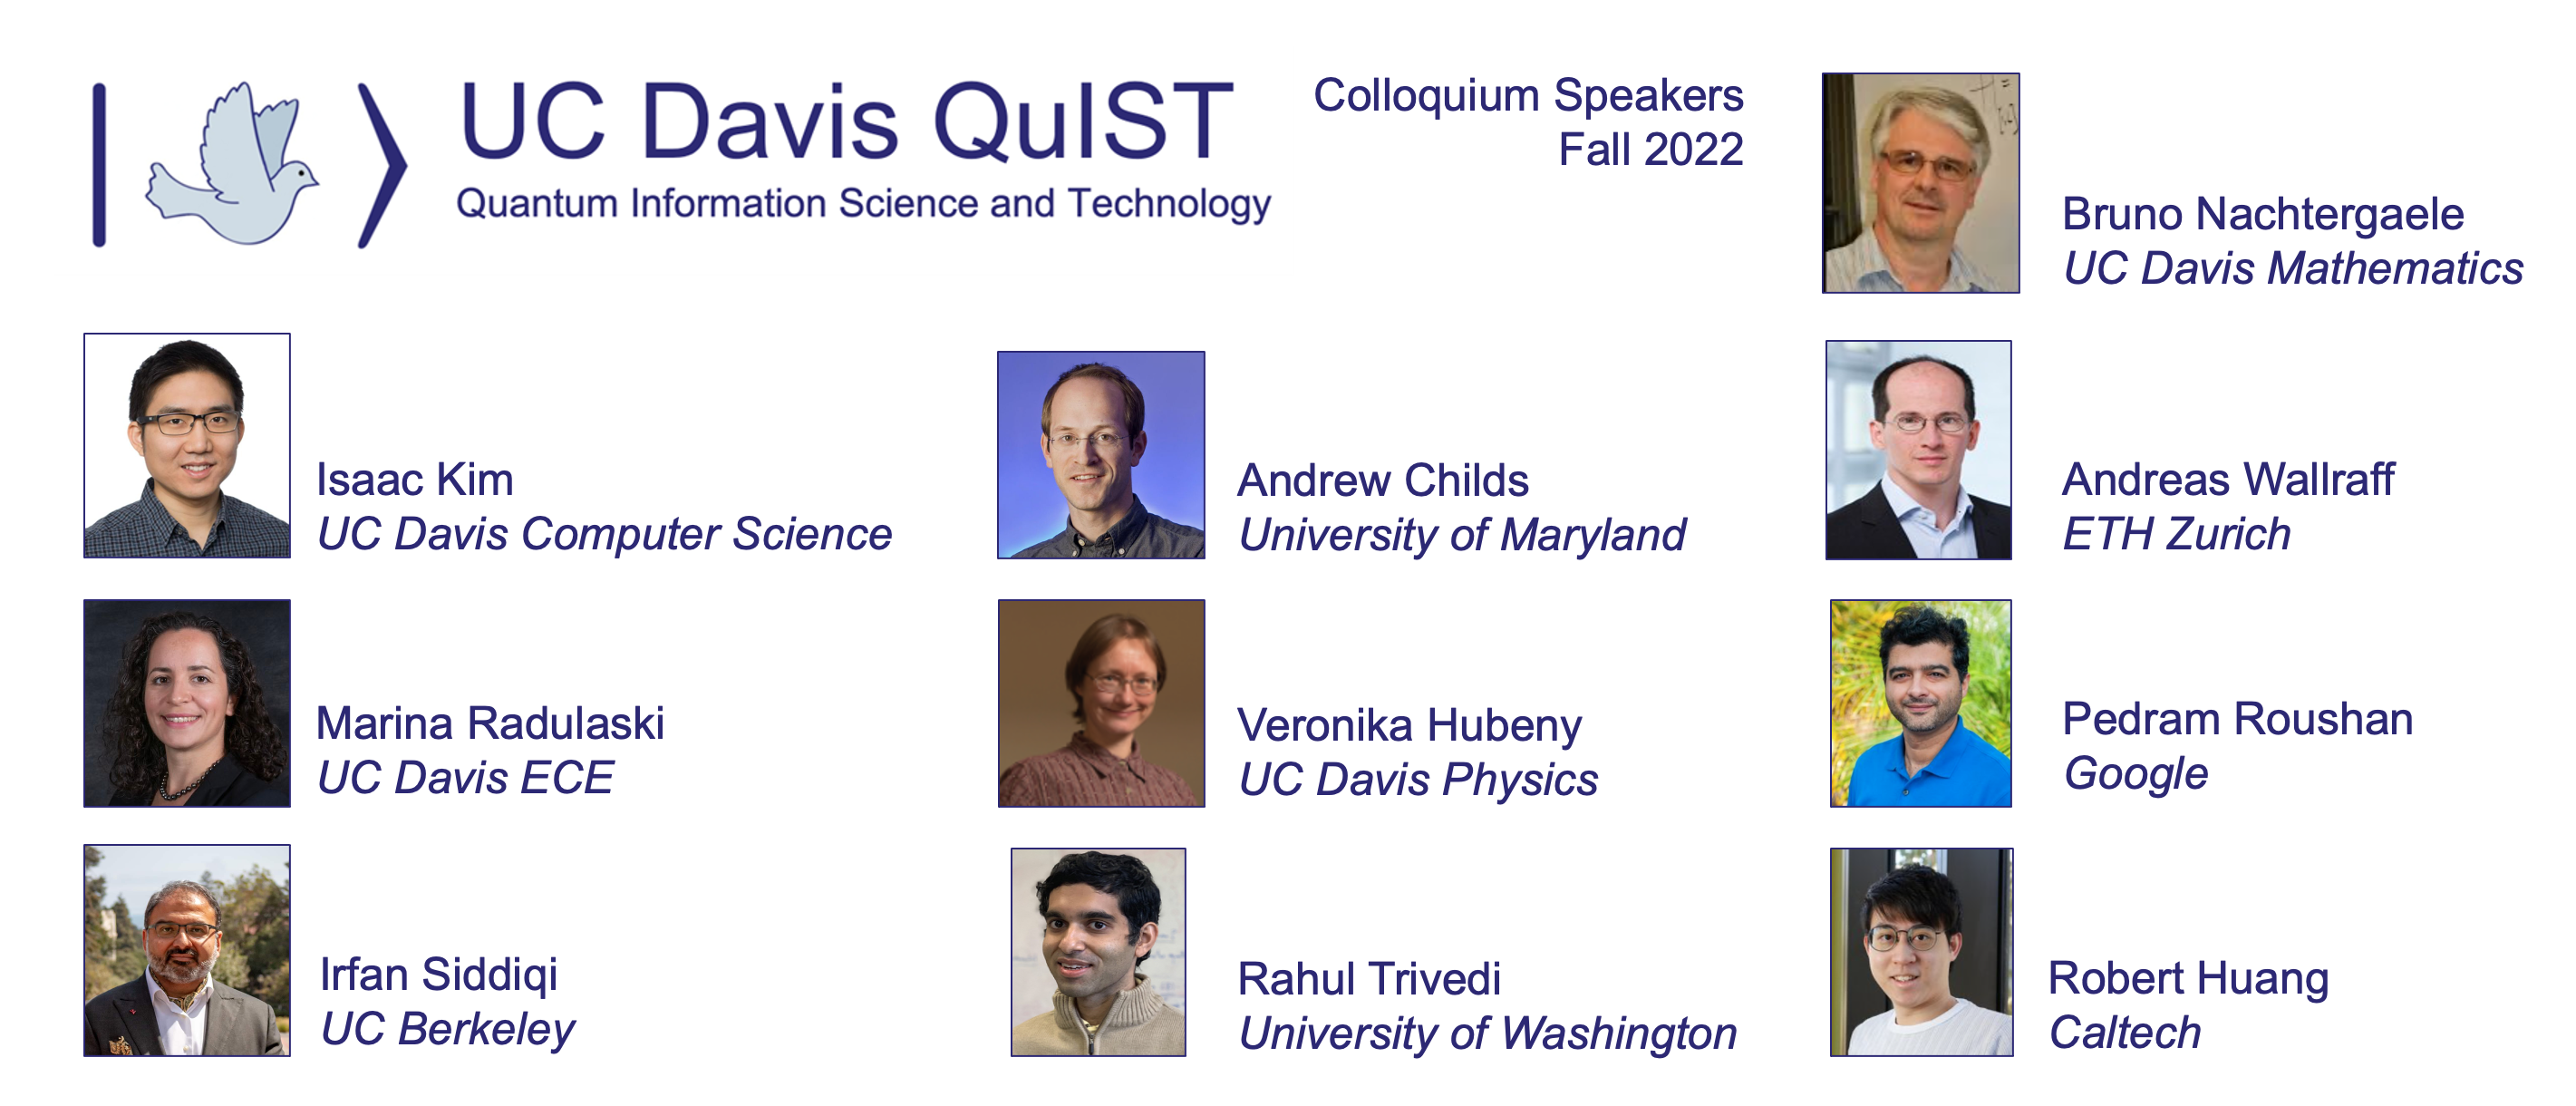 QuIST Colloquium Fall 2022 speakers